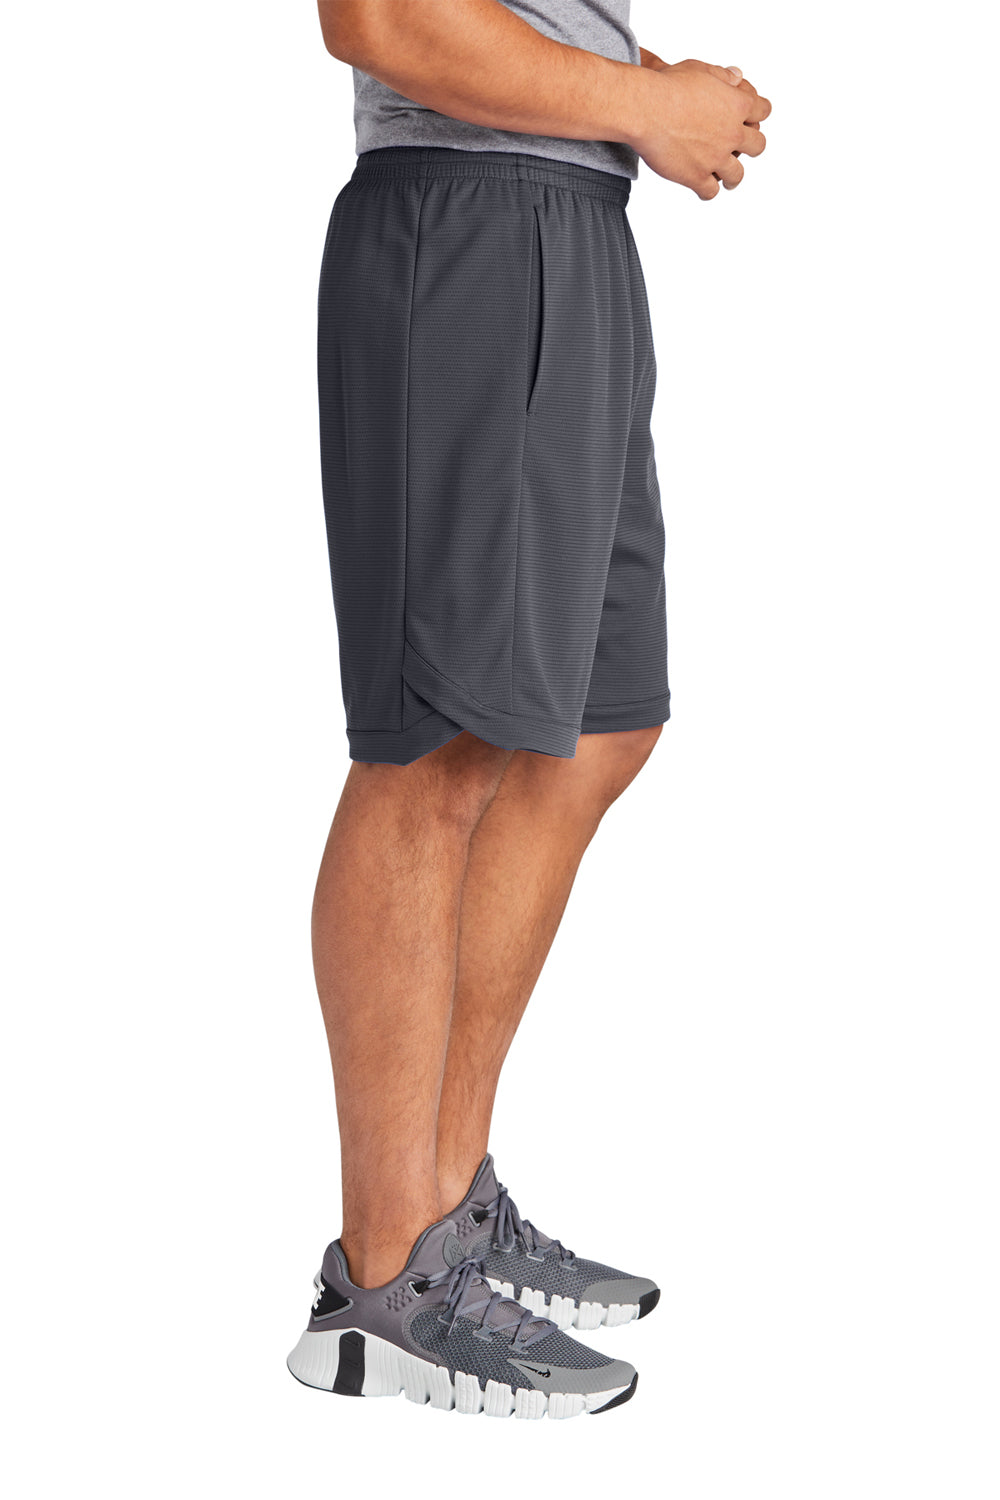 Sport-Tek ST575 Position PosiCharge Shorts w/ Pockets Graphite Grey Side